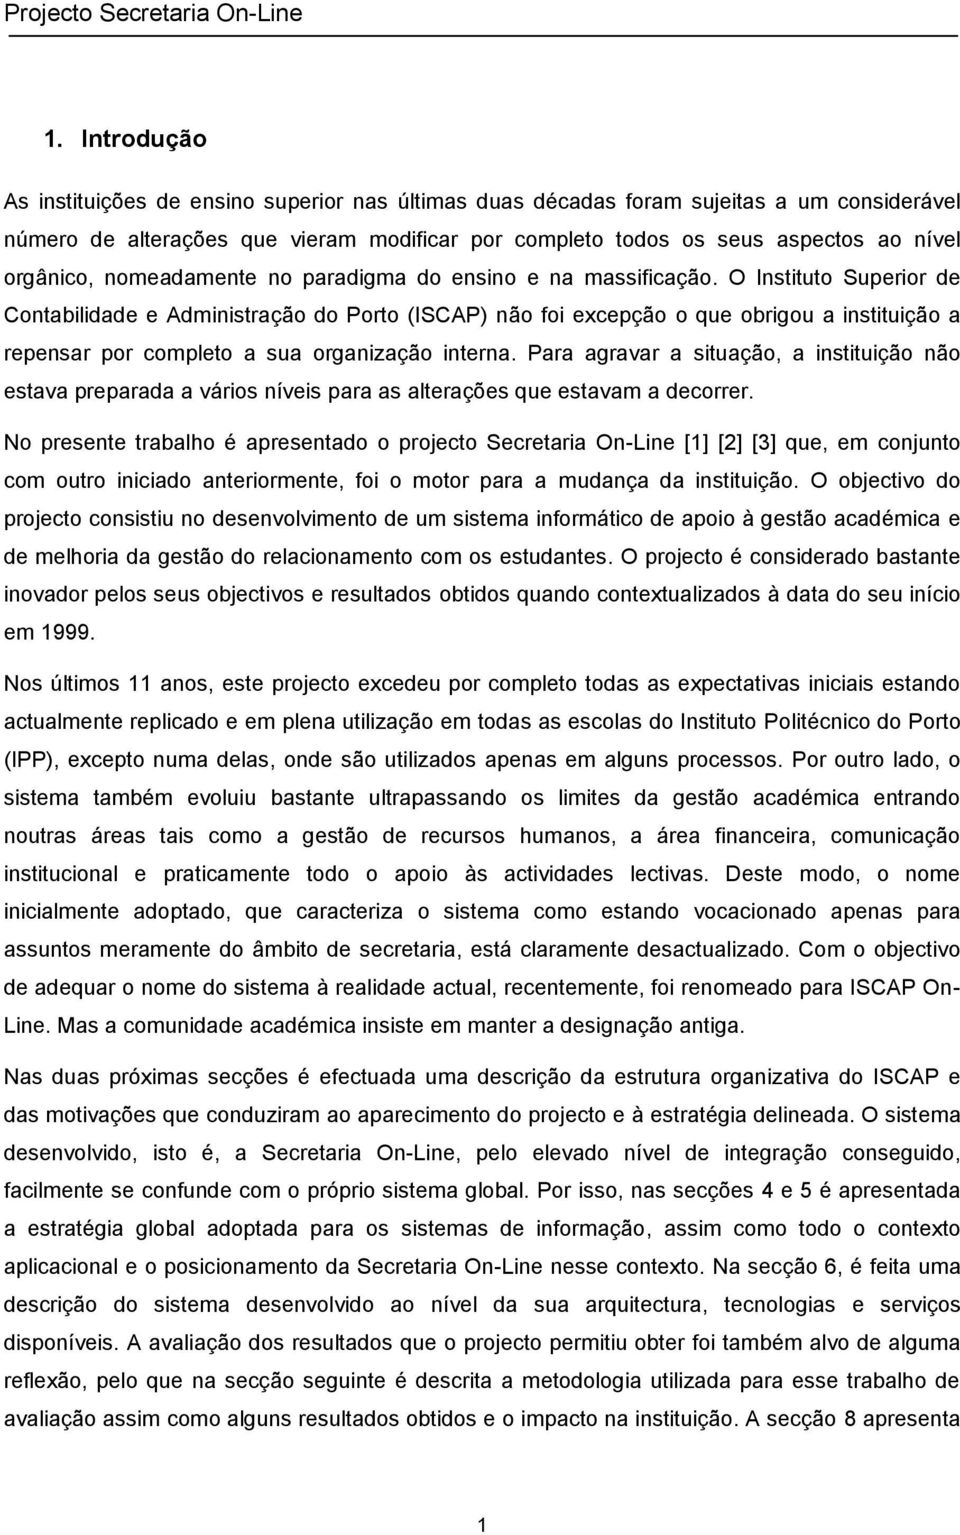 O Instituto Superior de Contabilidade e Administração do Porto (ISCAP) não foi excepção o que obrigou a instituição a repensar por completo a sua organização interna.